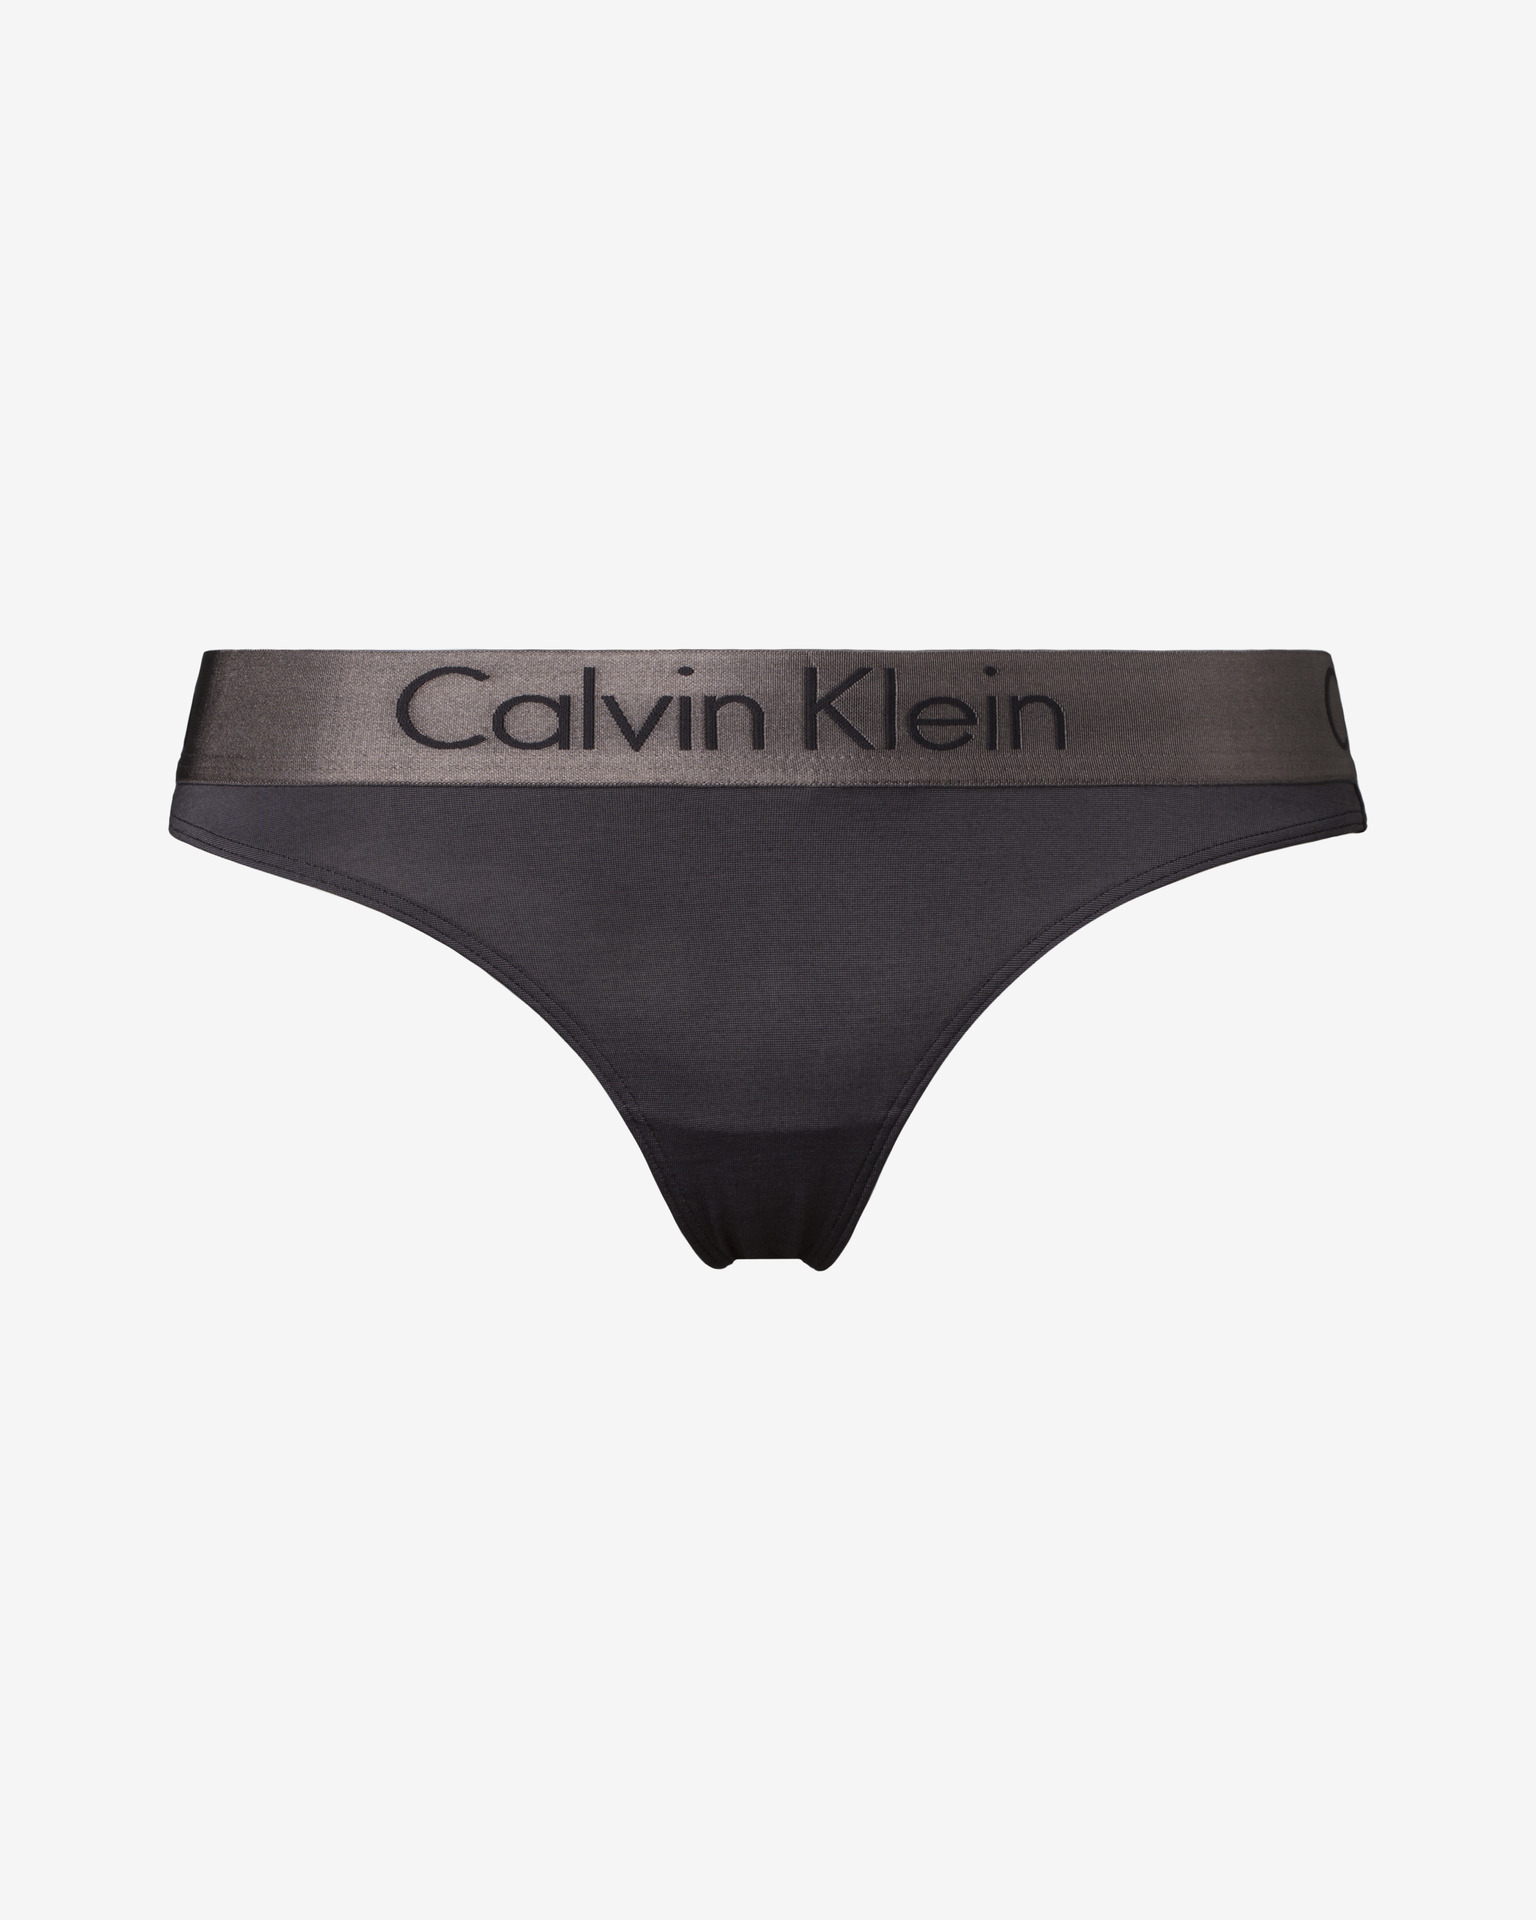 Calvin Klein - Panties Bibloo.com